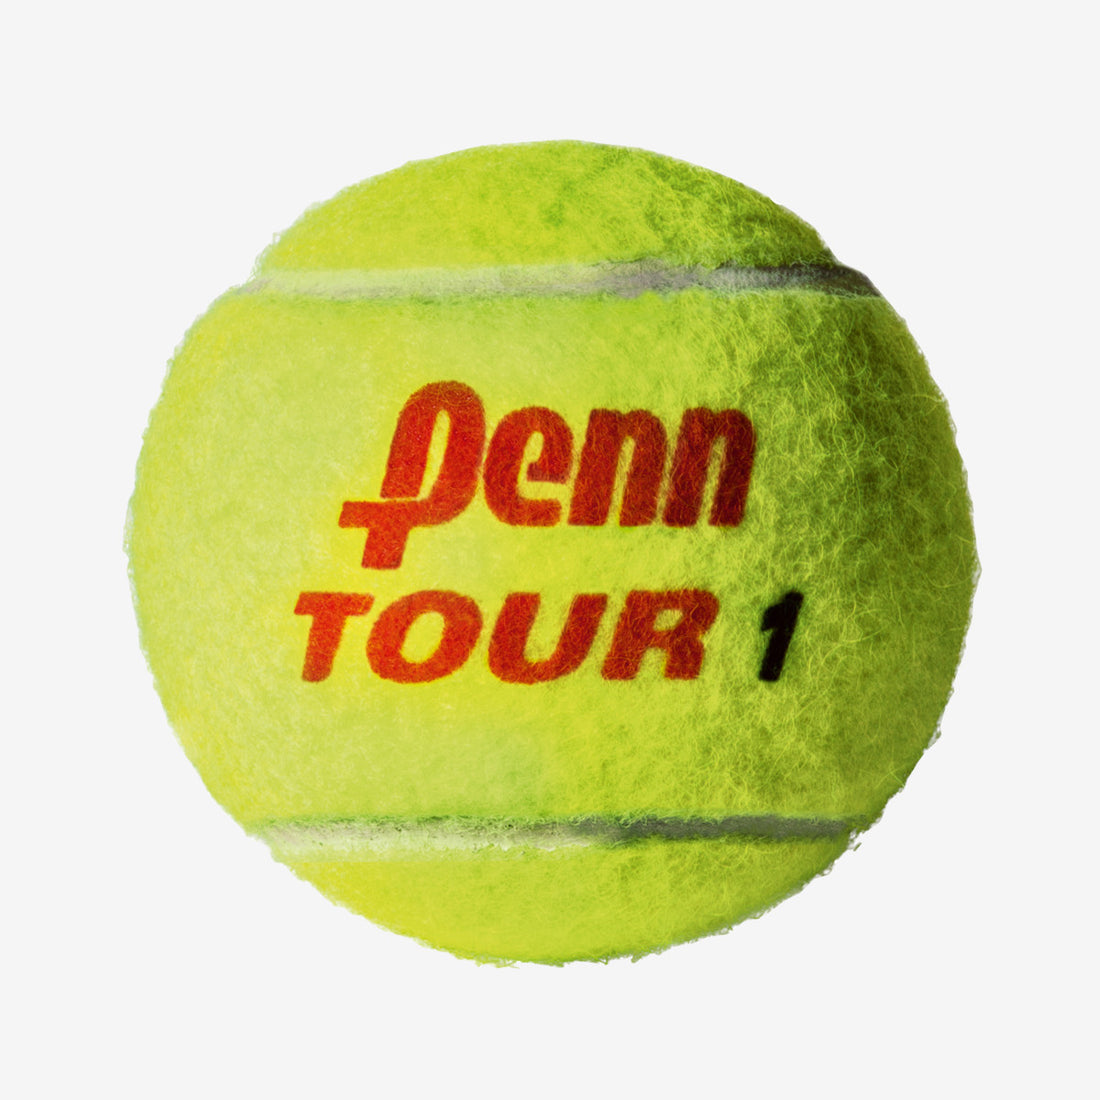 PENN TOUR Regular-Duty FELT 3B Tennis Ball – Pro Racket Sports